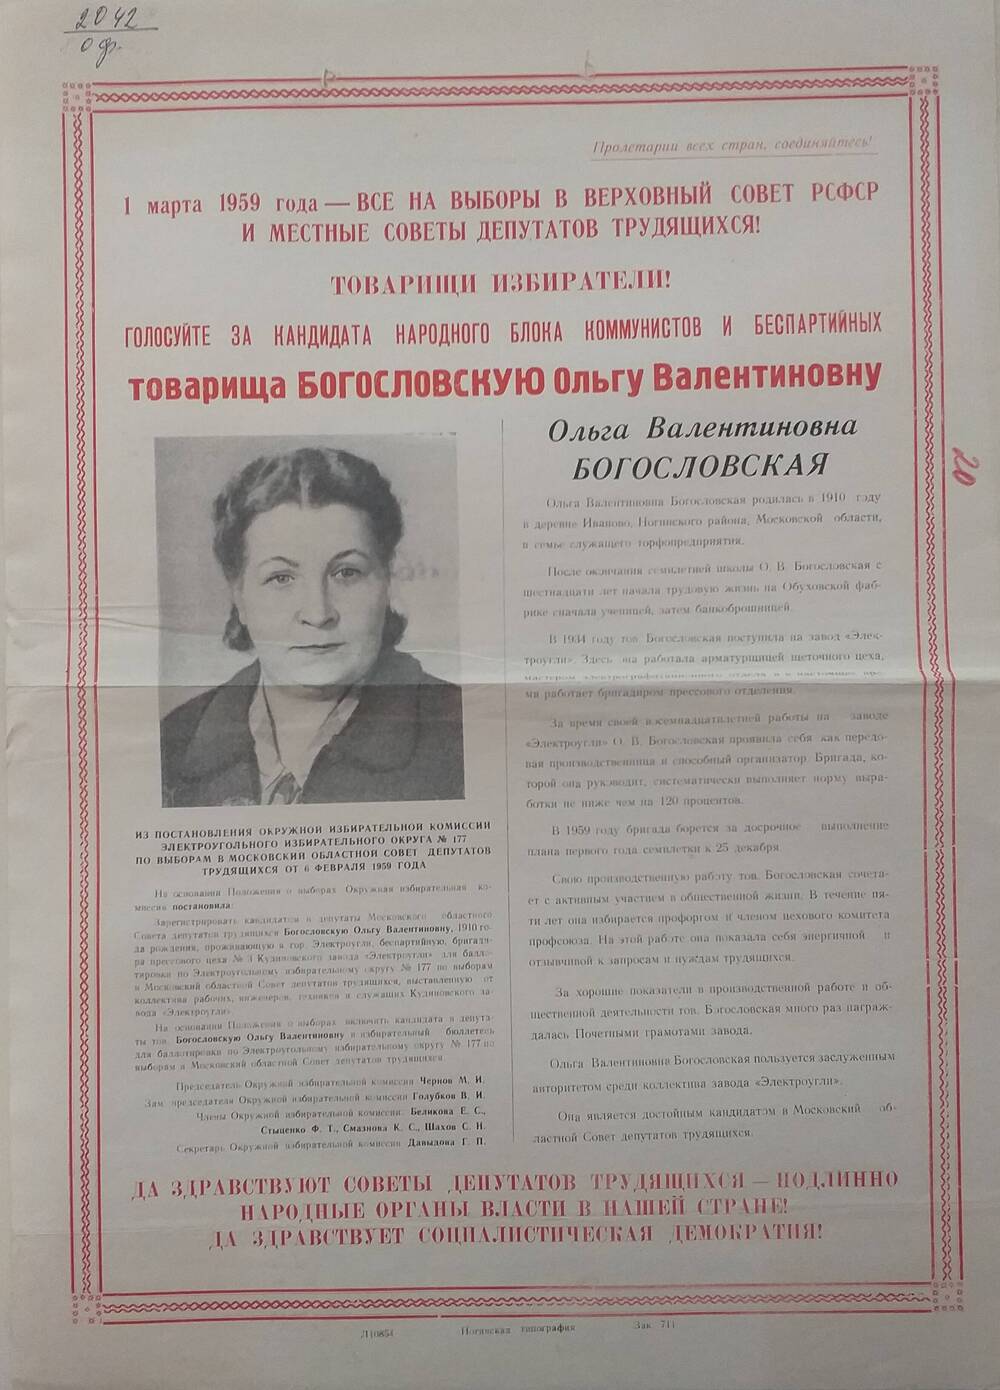 Плакат Призыв к голосованию на выборах 1 марта 1959 года за товарища Богословскую Ольгу Валентиновну - работницу завода Электроугли, январь 1959 год.